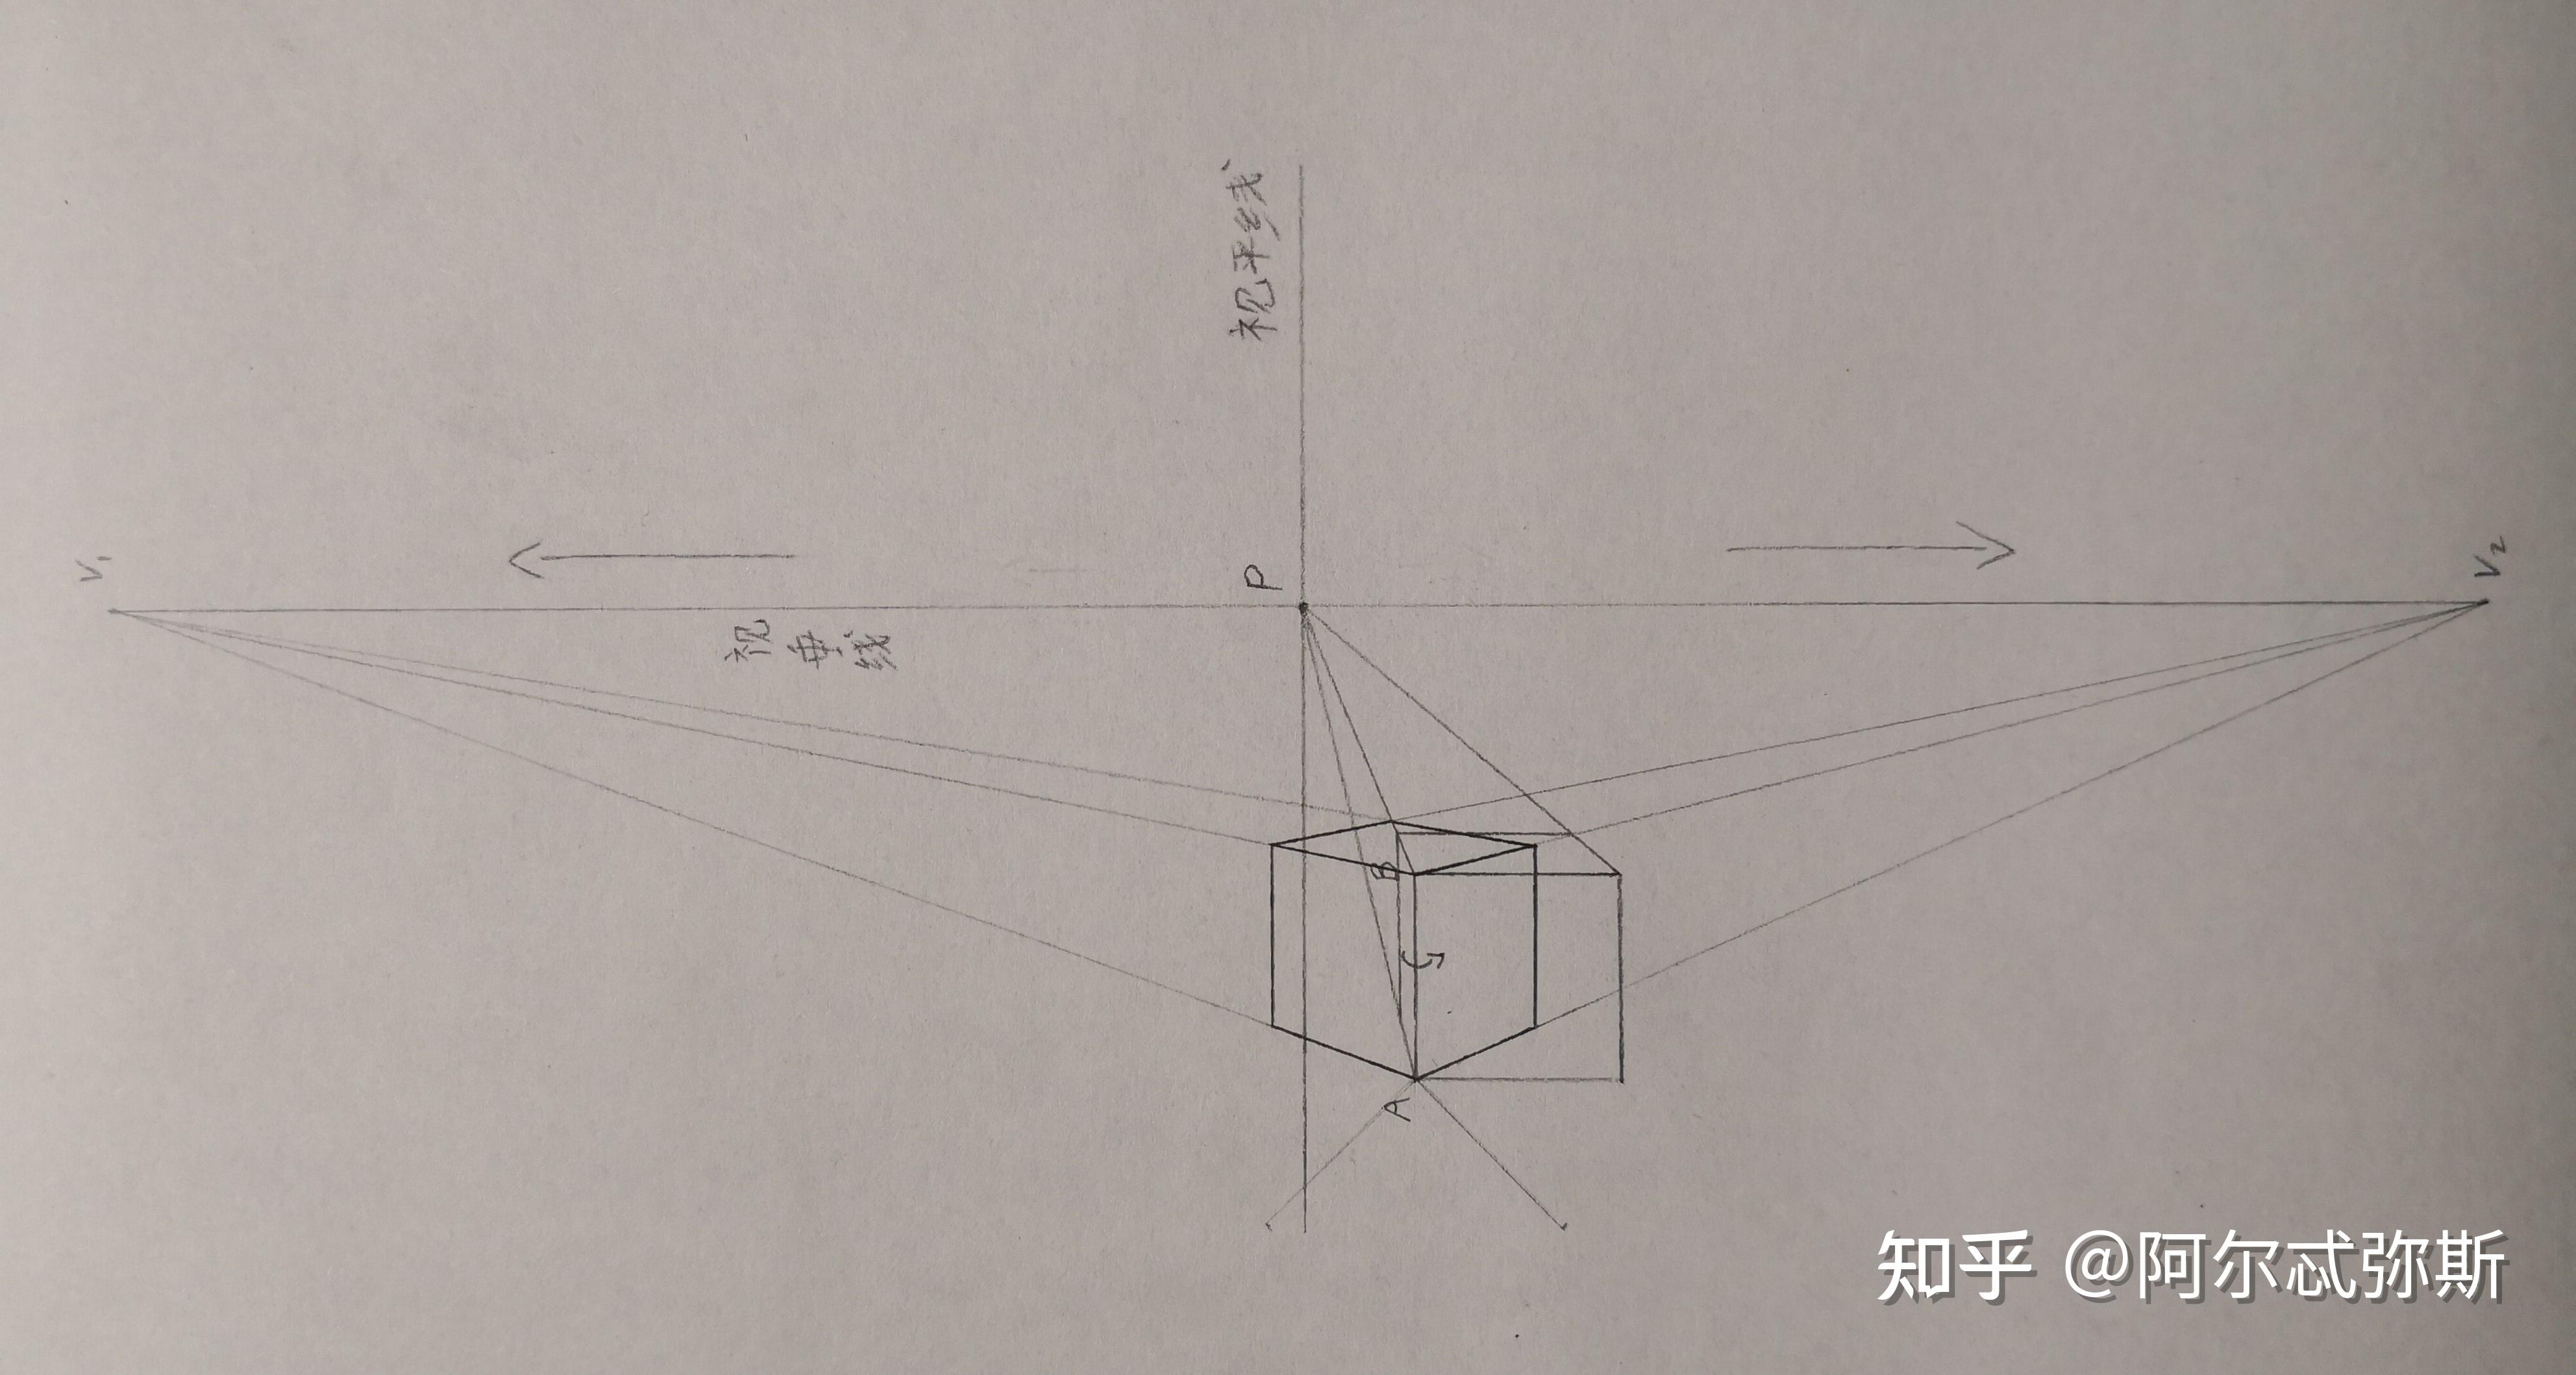 两点透视中如果物体与画面平行的那组线不垂直于视平线而是与视平线